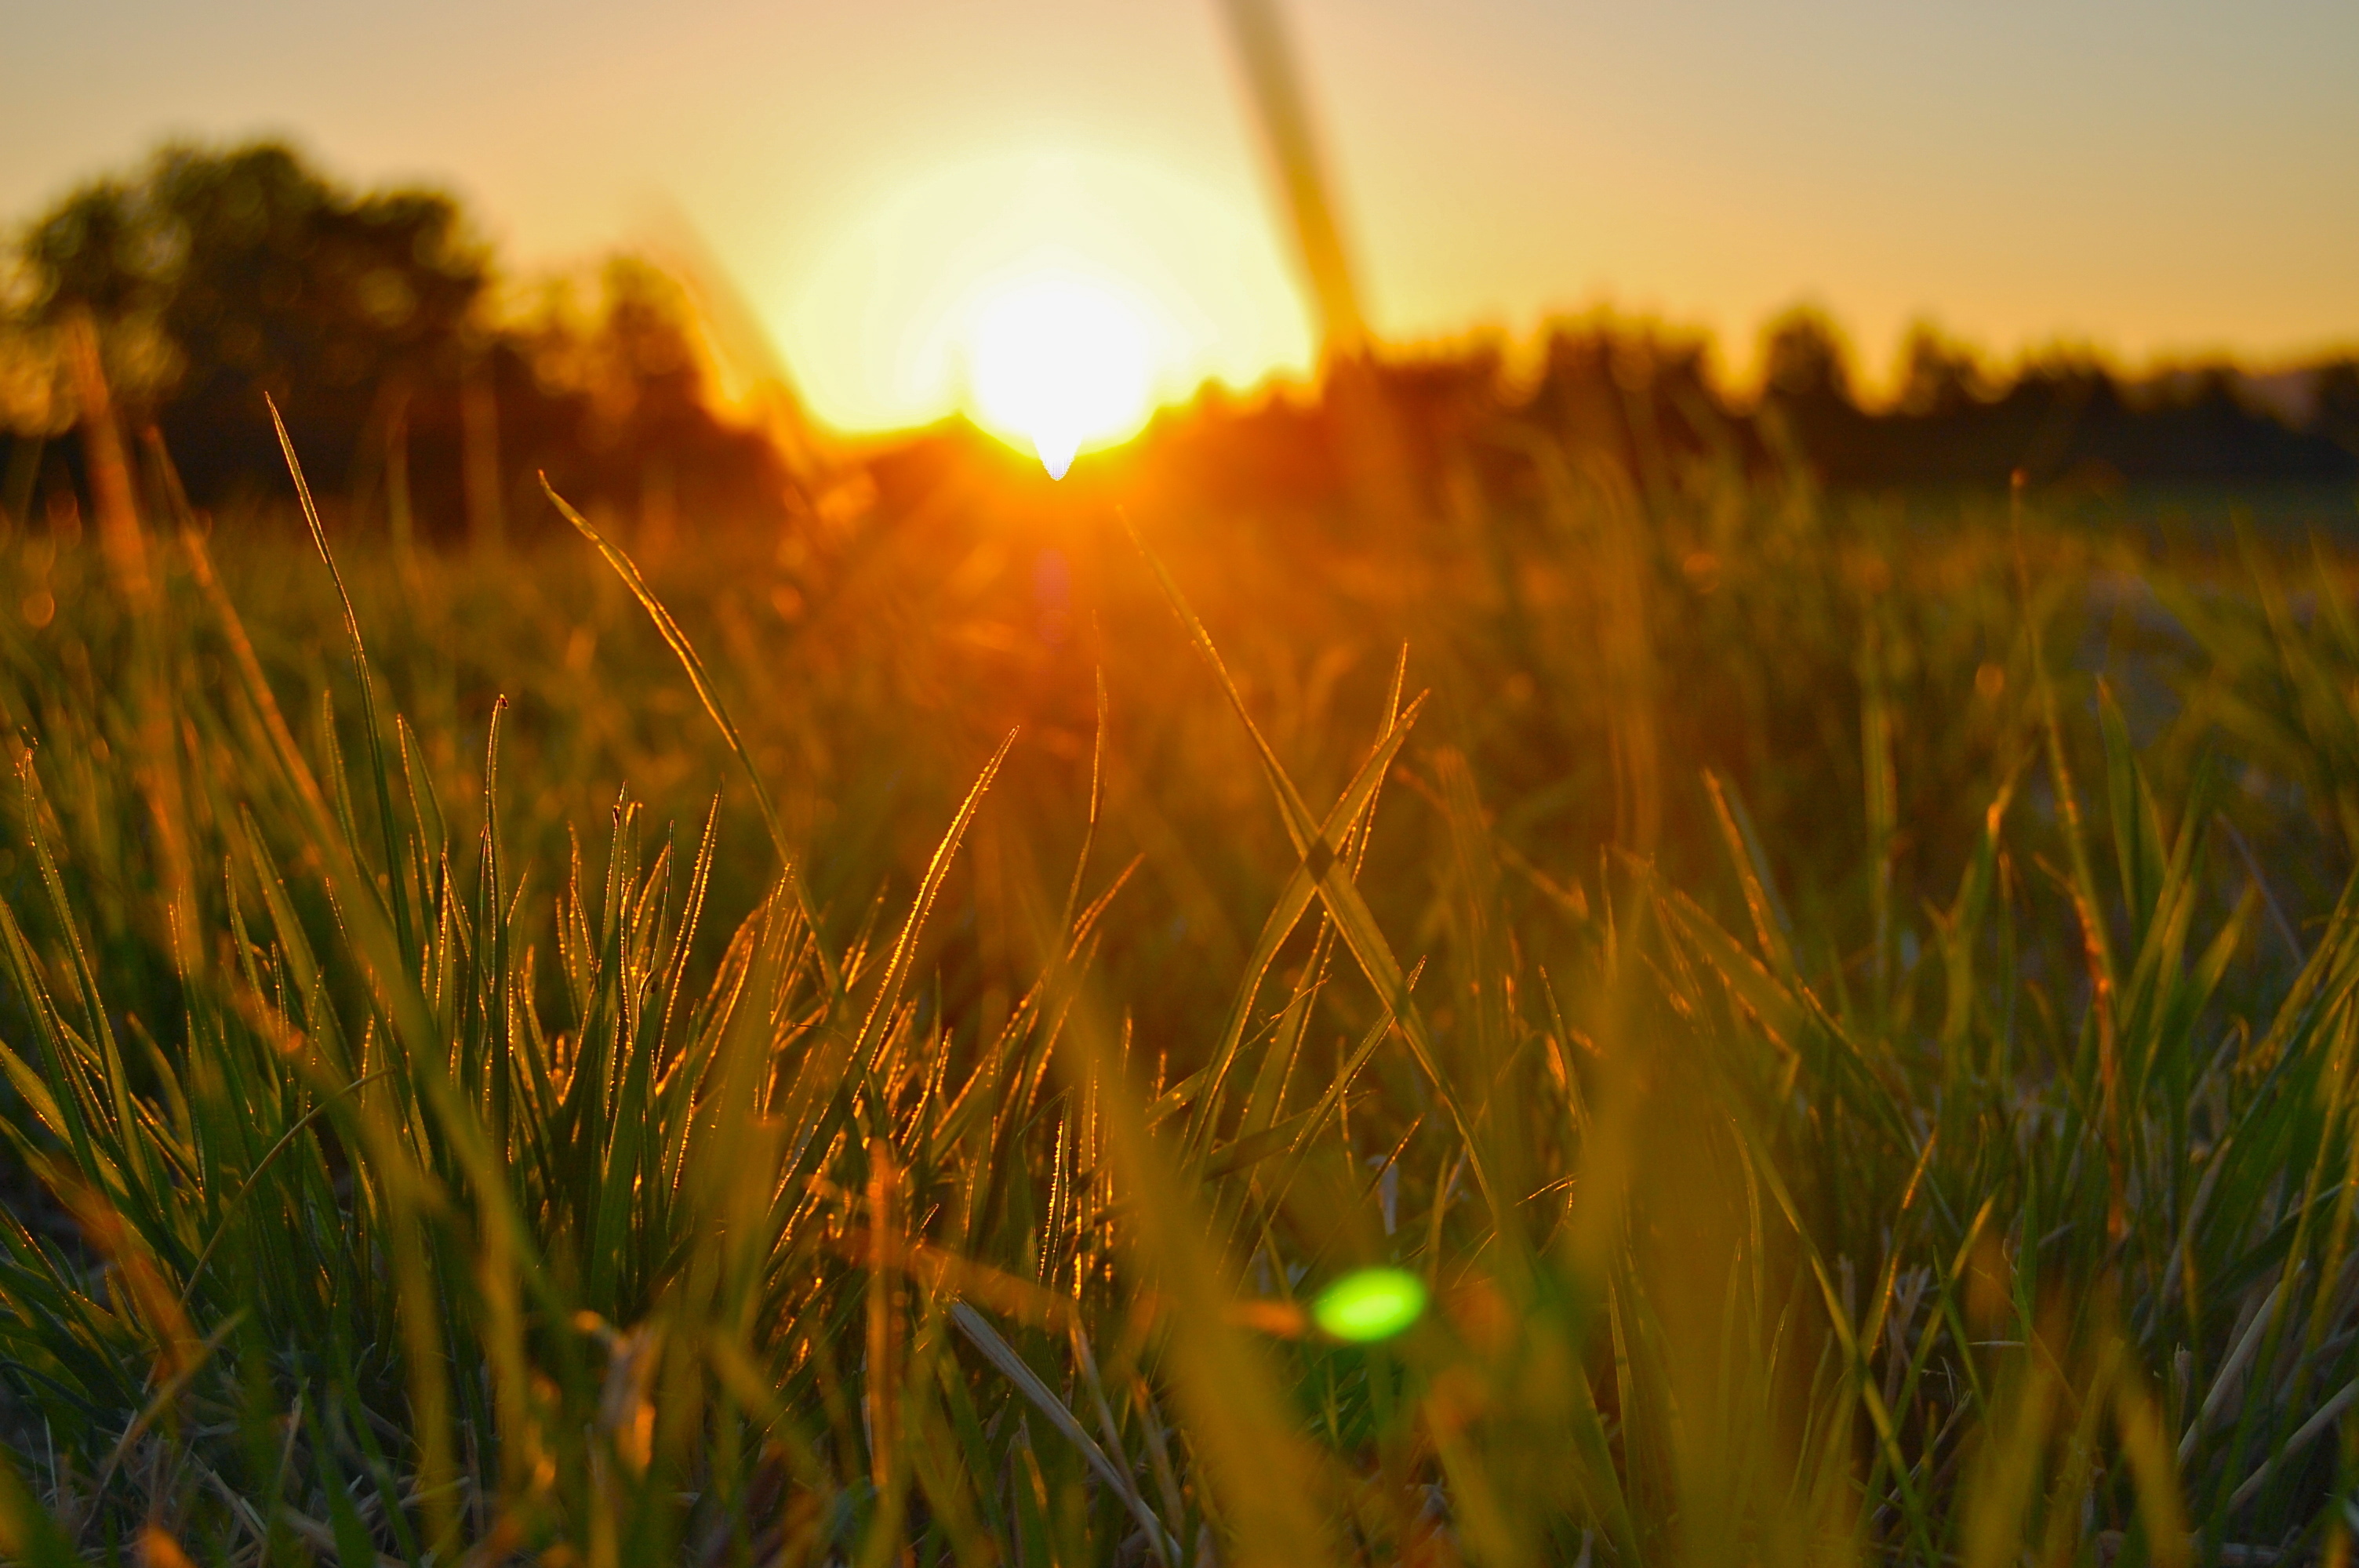 Картинка утро. Утреннее солнце. Утро солнце. Трава и солнце. Солнечные лучи в поле.